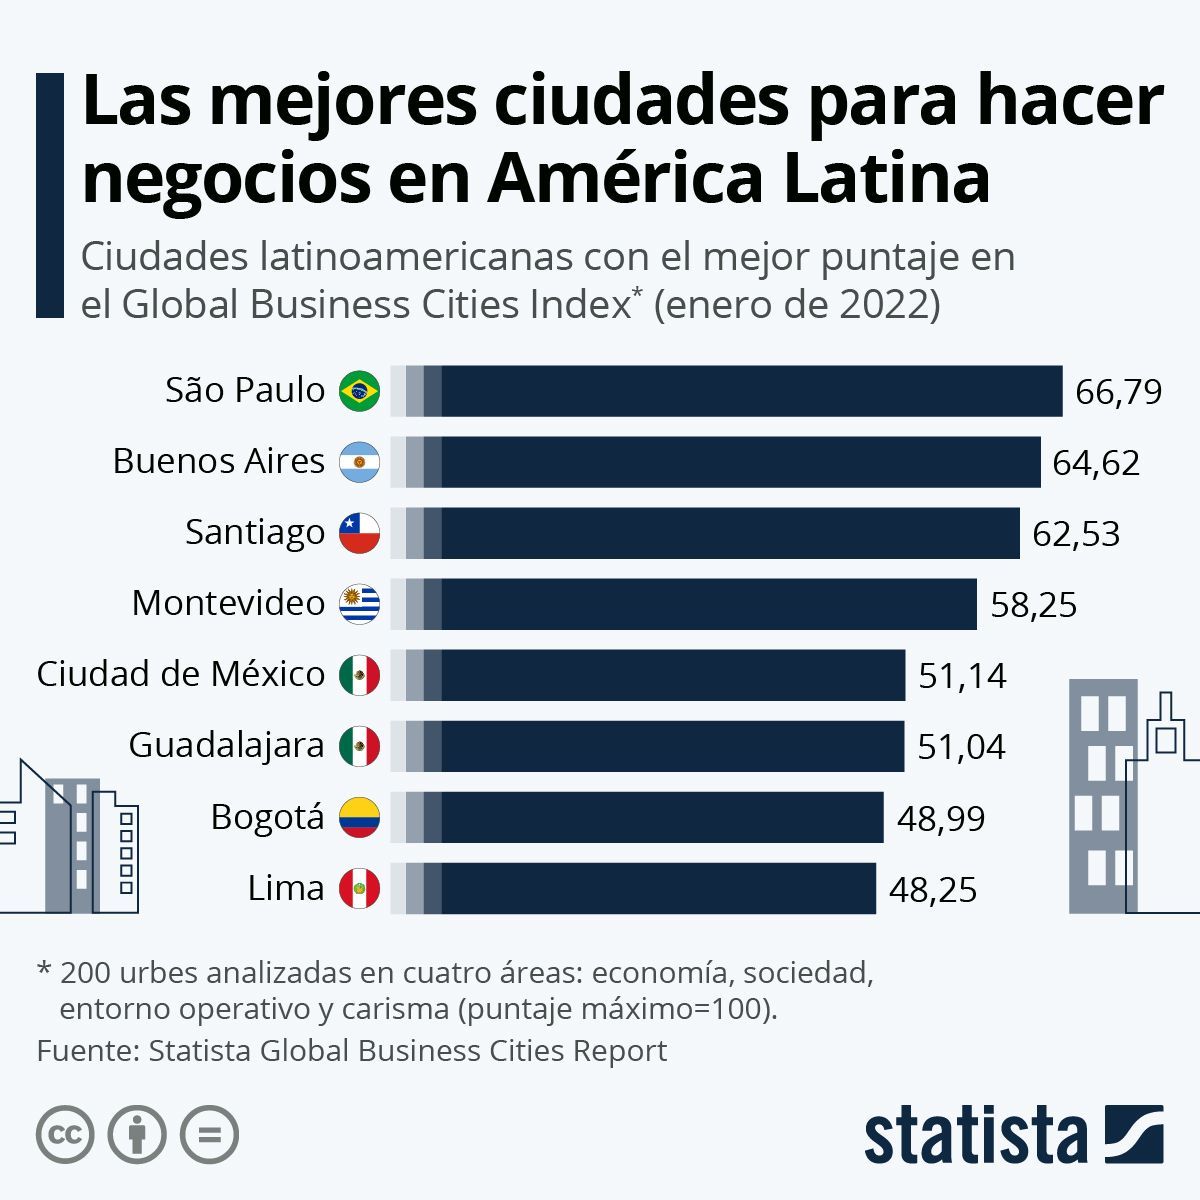 Las mejores ciudades para hacer negocios en América Latina